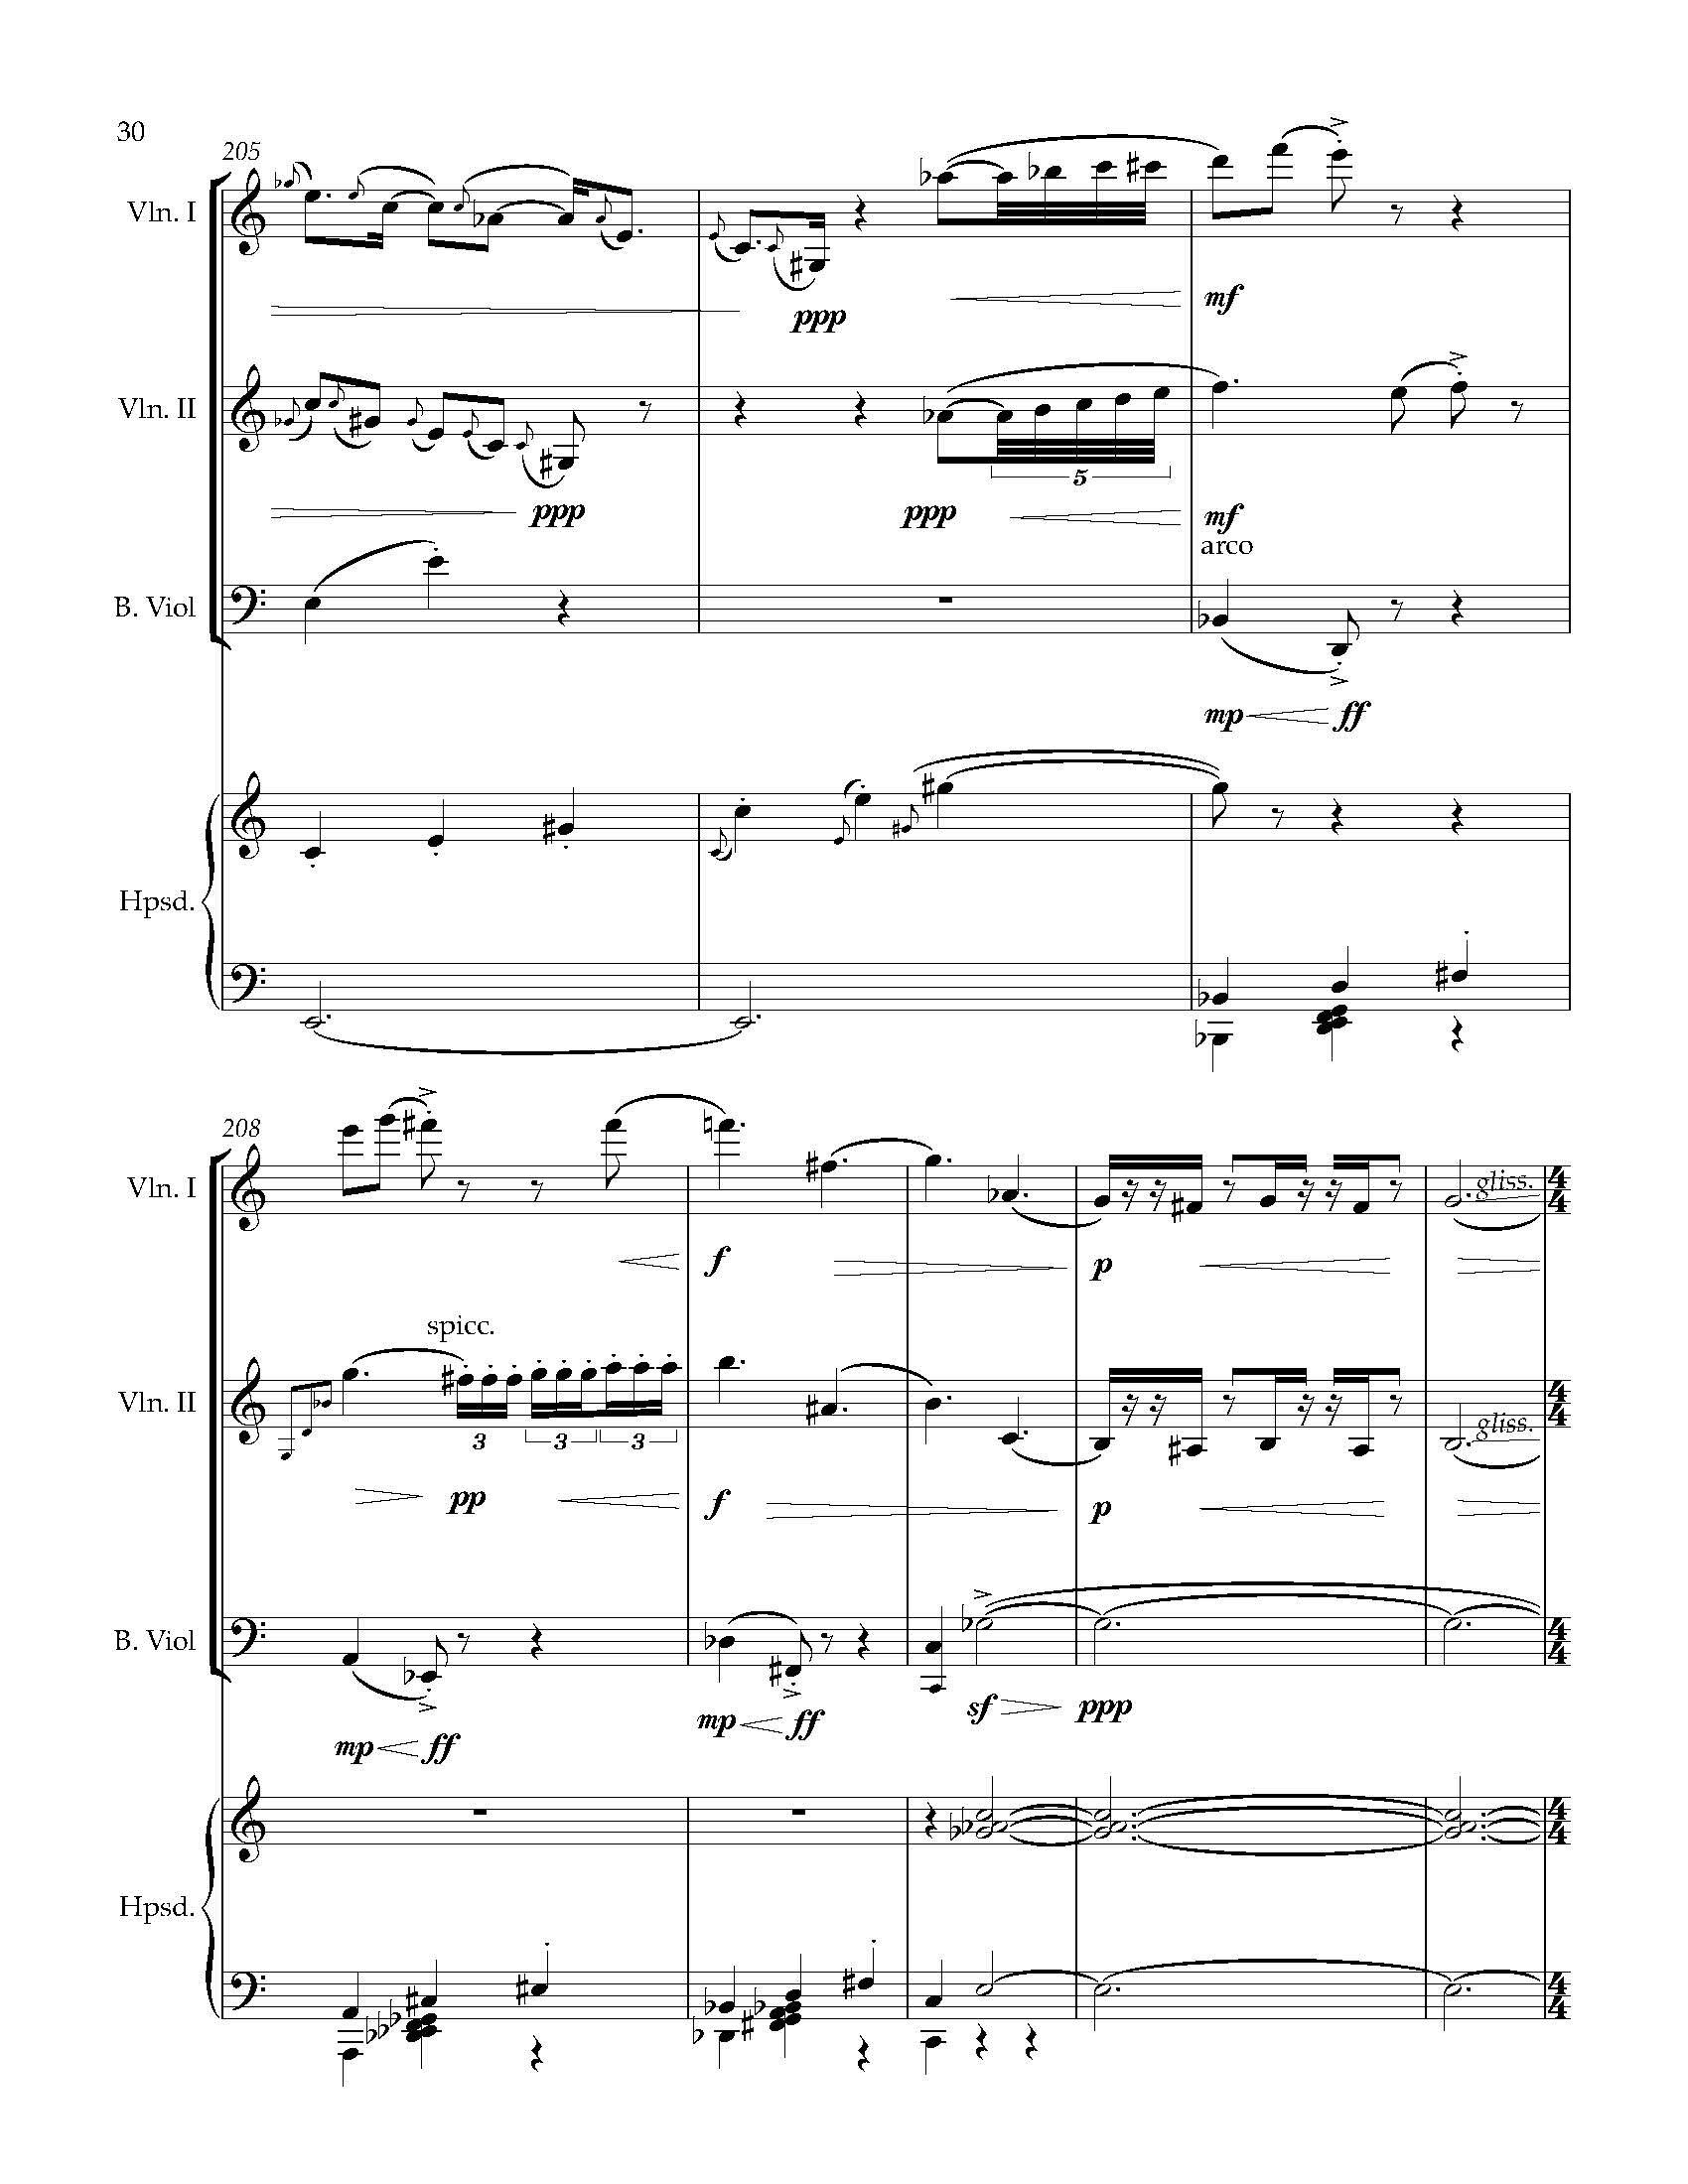 Sonata Sonare - Complete Score_Page_36.jpg